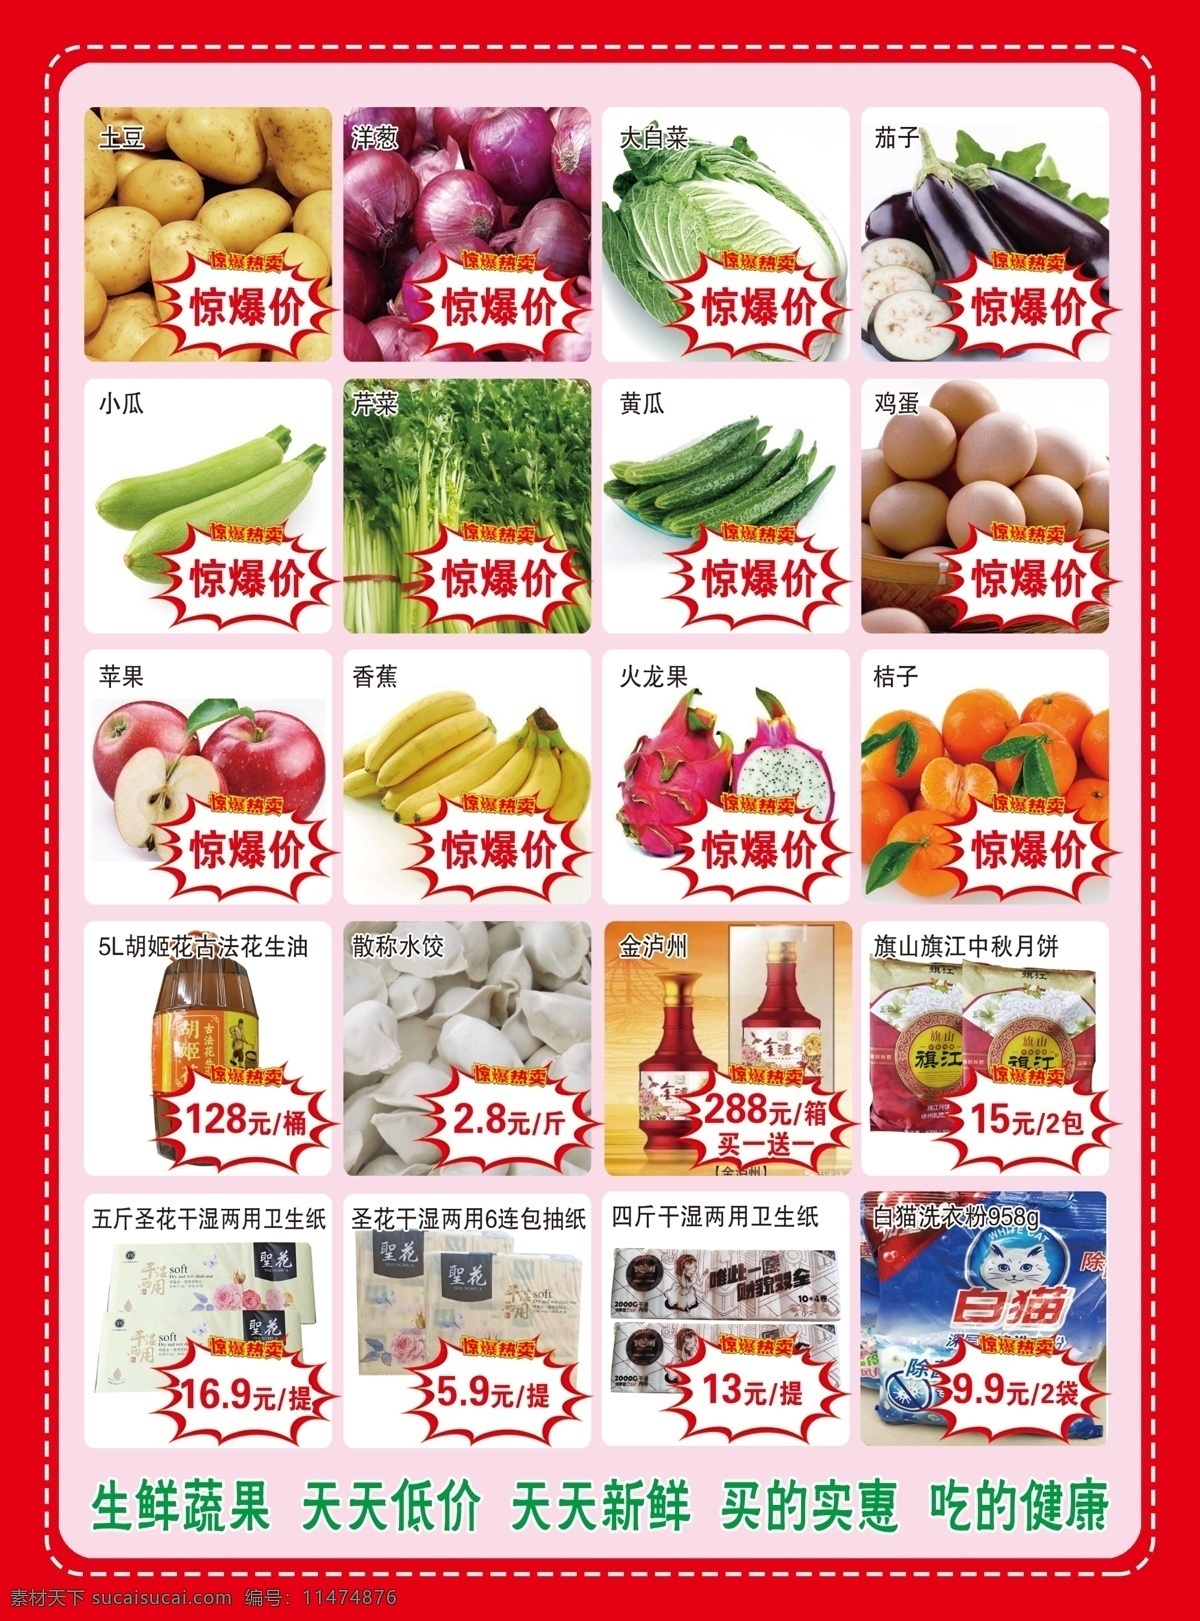 超市图片 超市单页 生鲜 蔬菜 惊爆价 天天低价 天天新鲜 买的实惠 吃的健康 分层